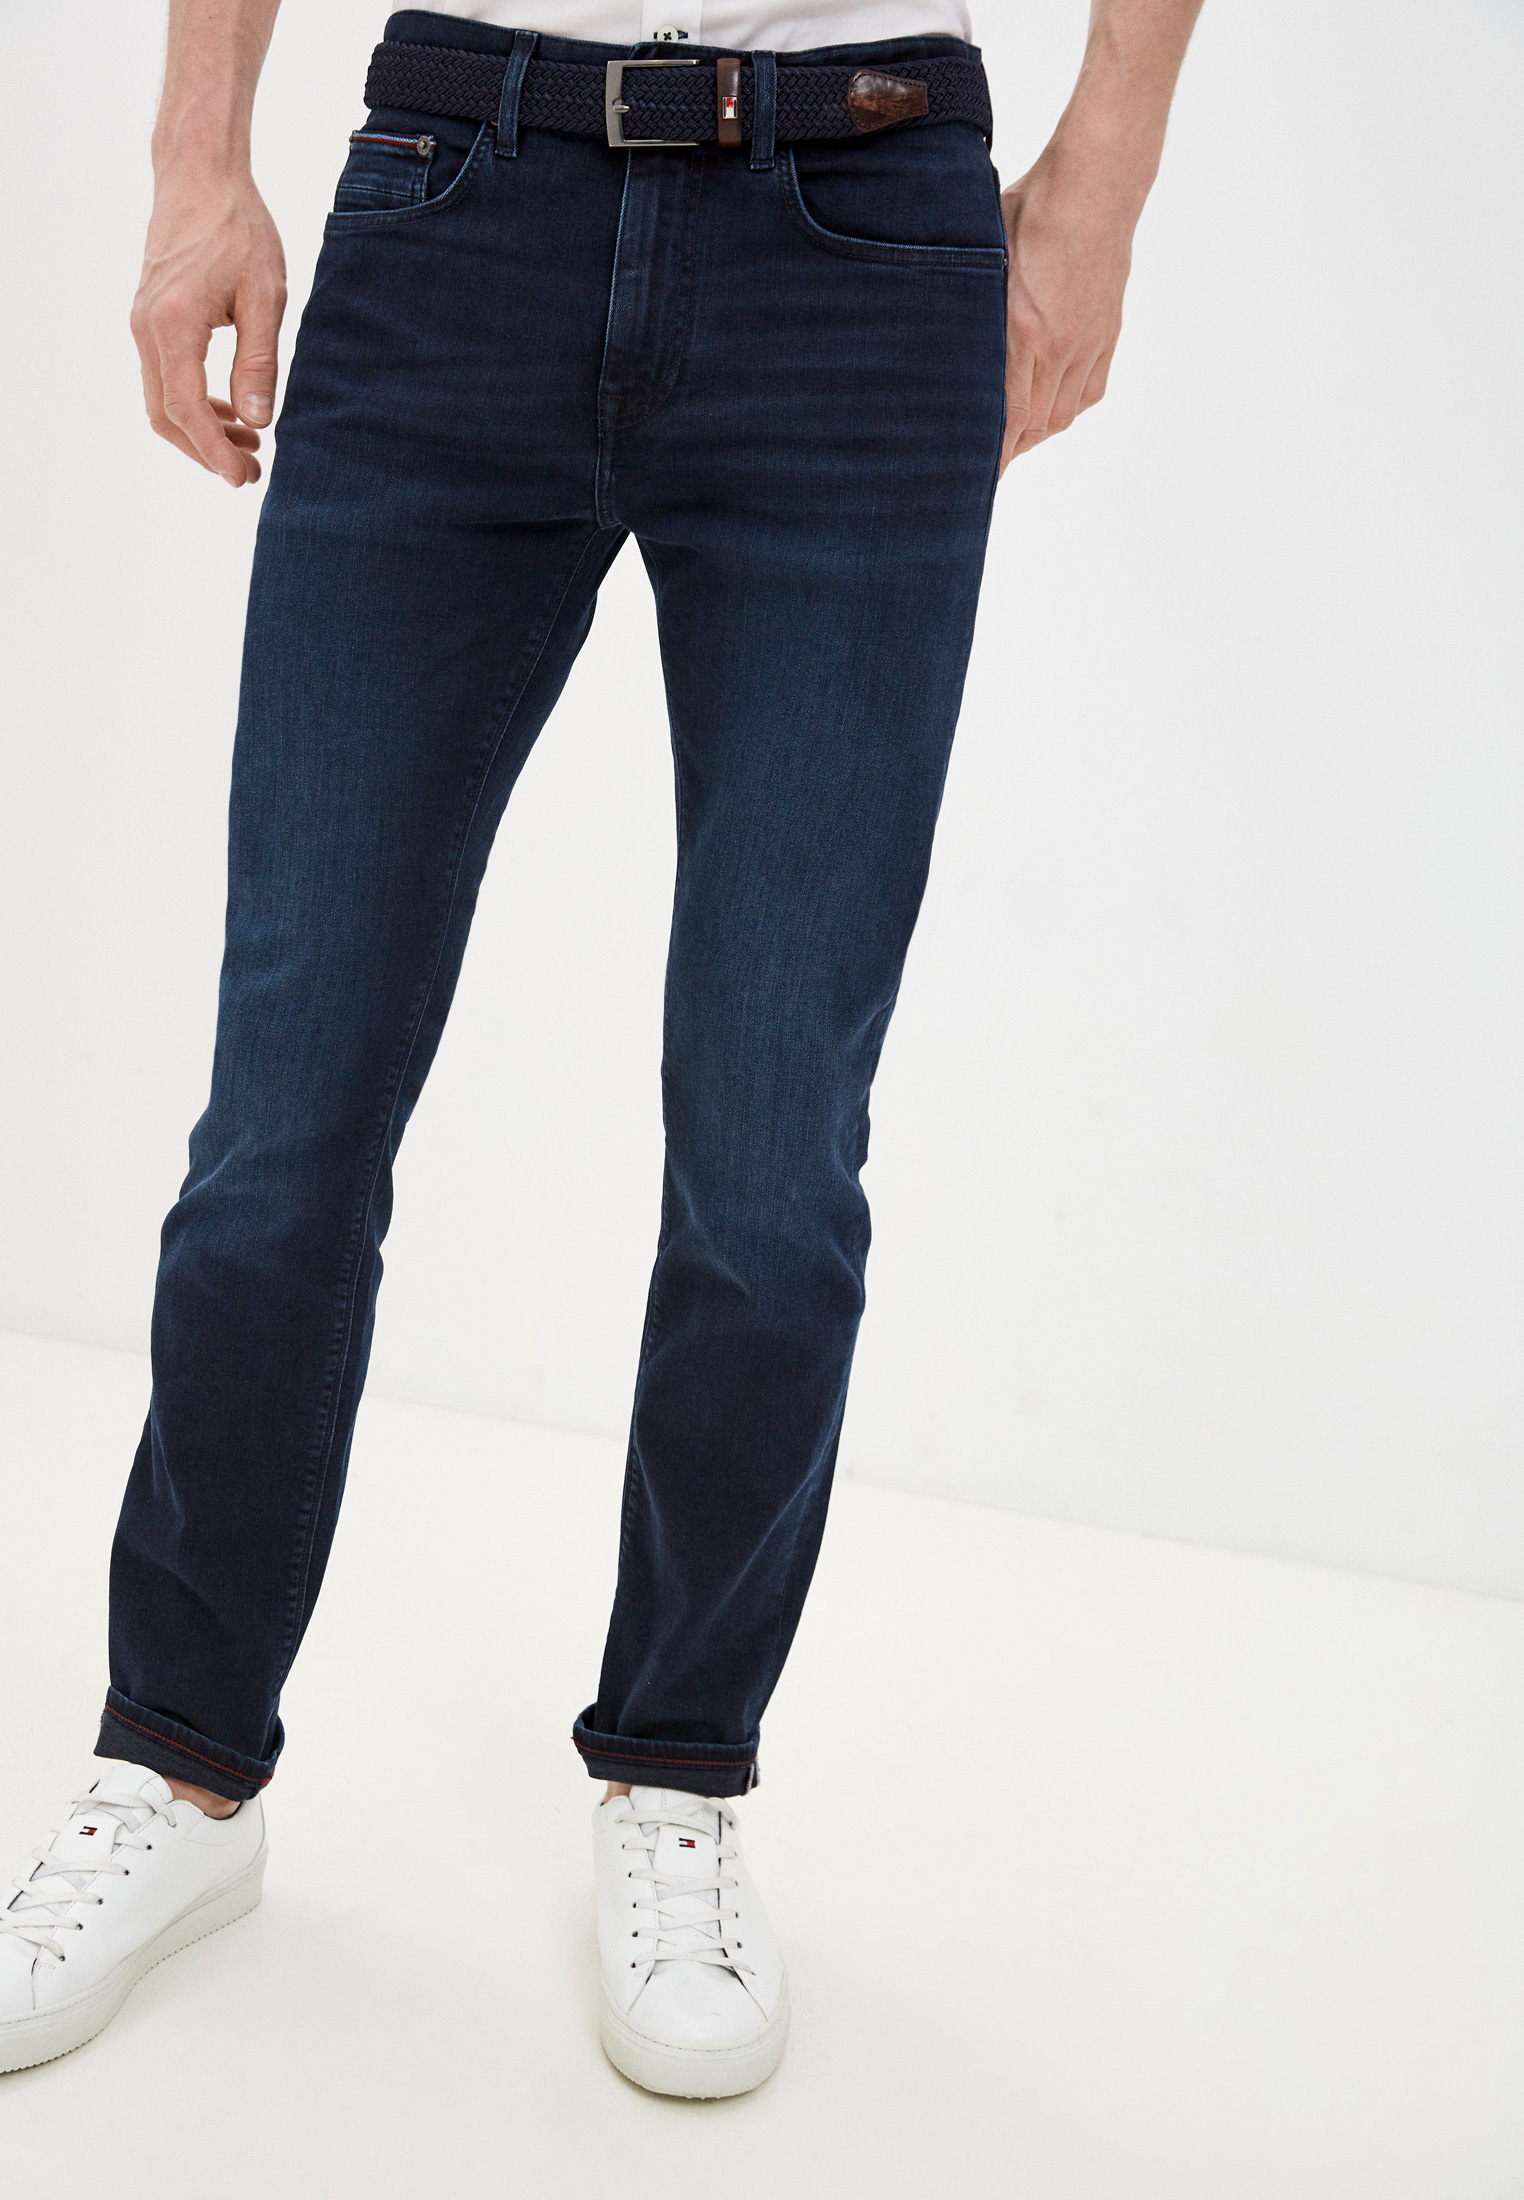 Мужские прямые джинсы Tommy Hilfiger (Томми Хилфигер) MW0MW15593 купить за  7690 руб.